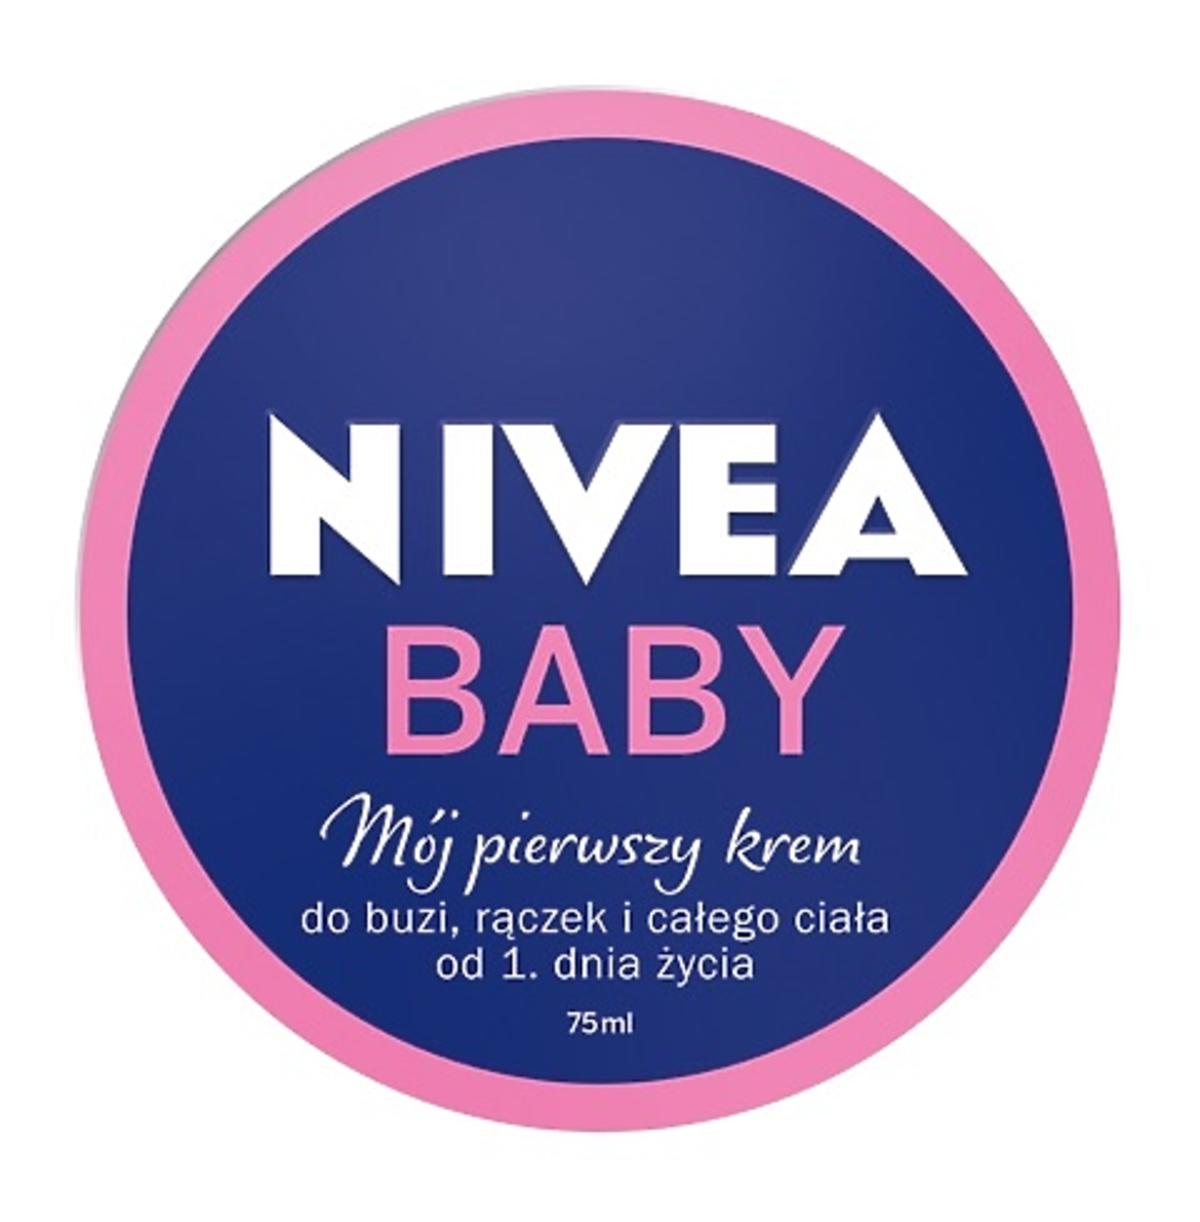 NIVEA BABY Mój pierwszy krem